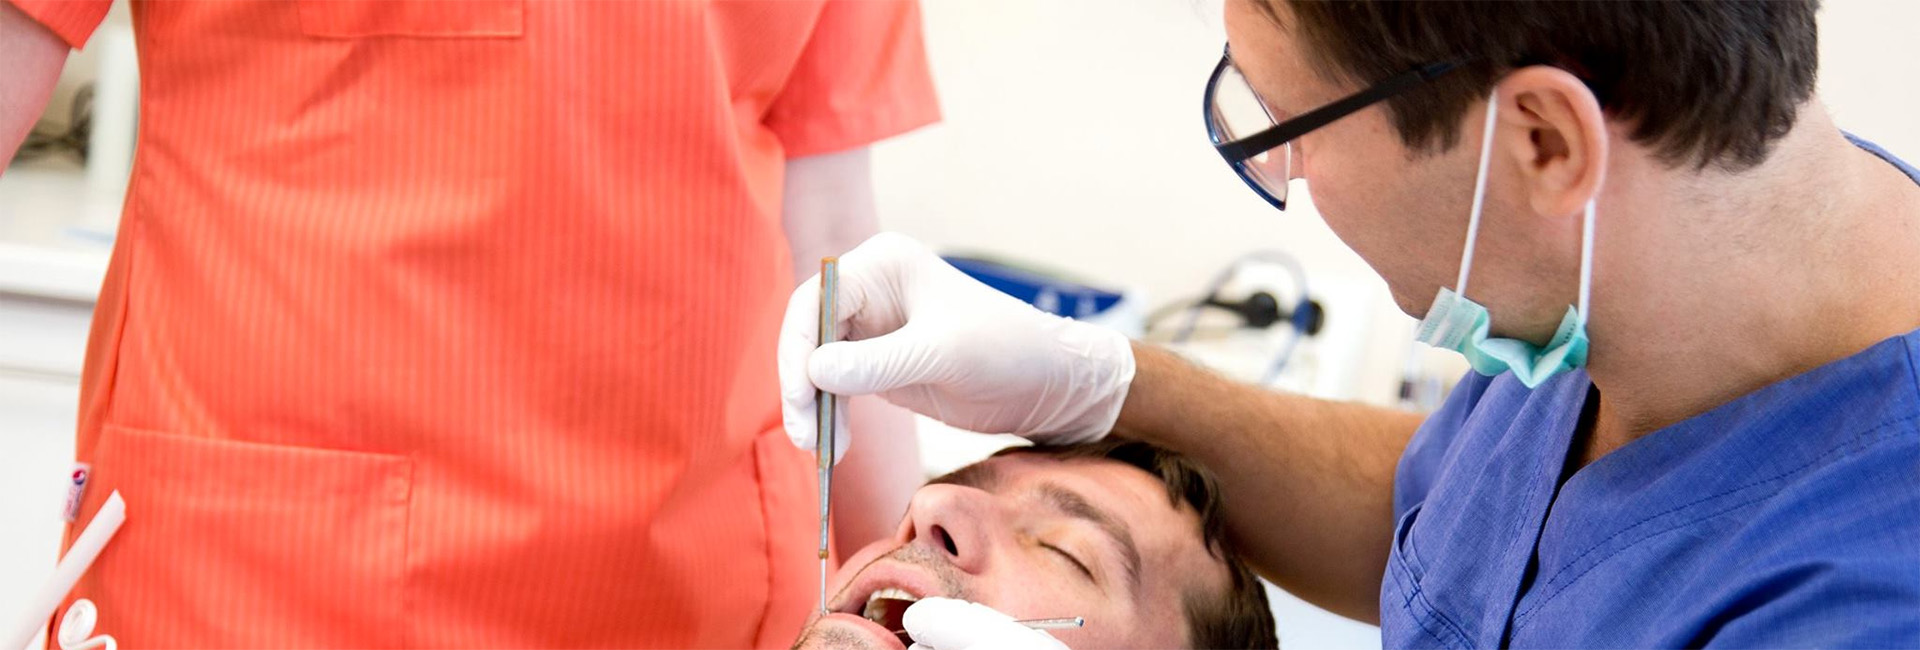 Tannlege som utfører undersøkelse på en pasient